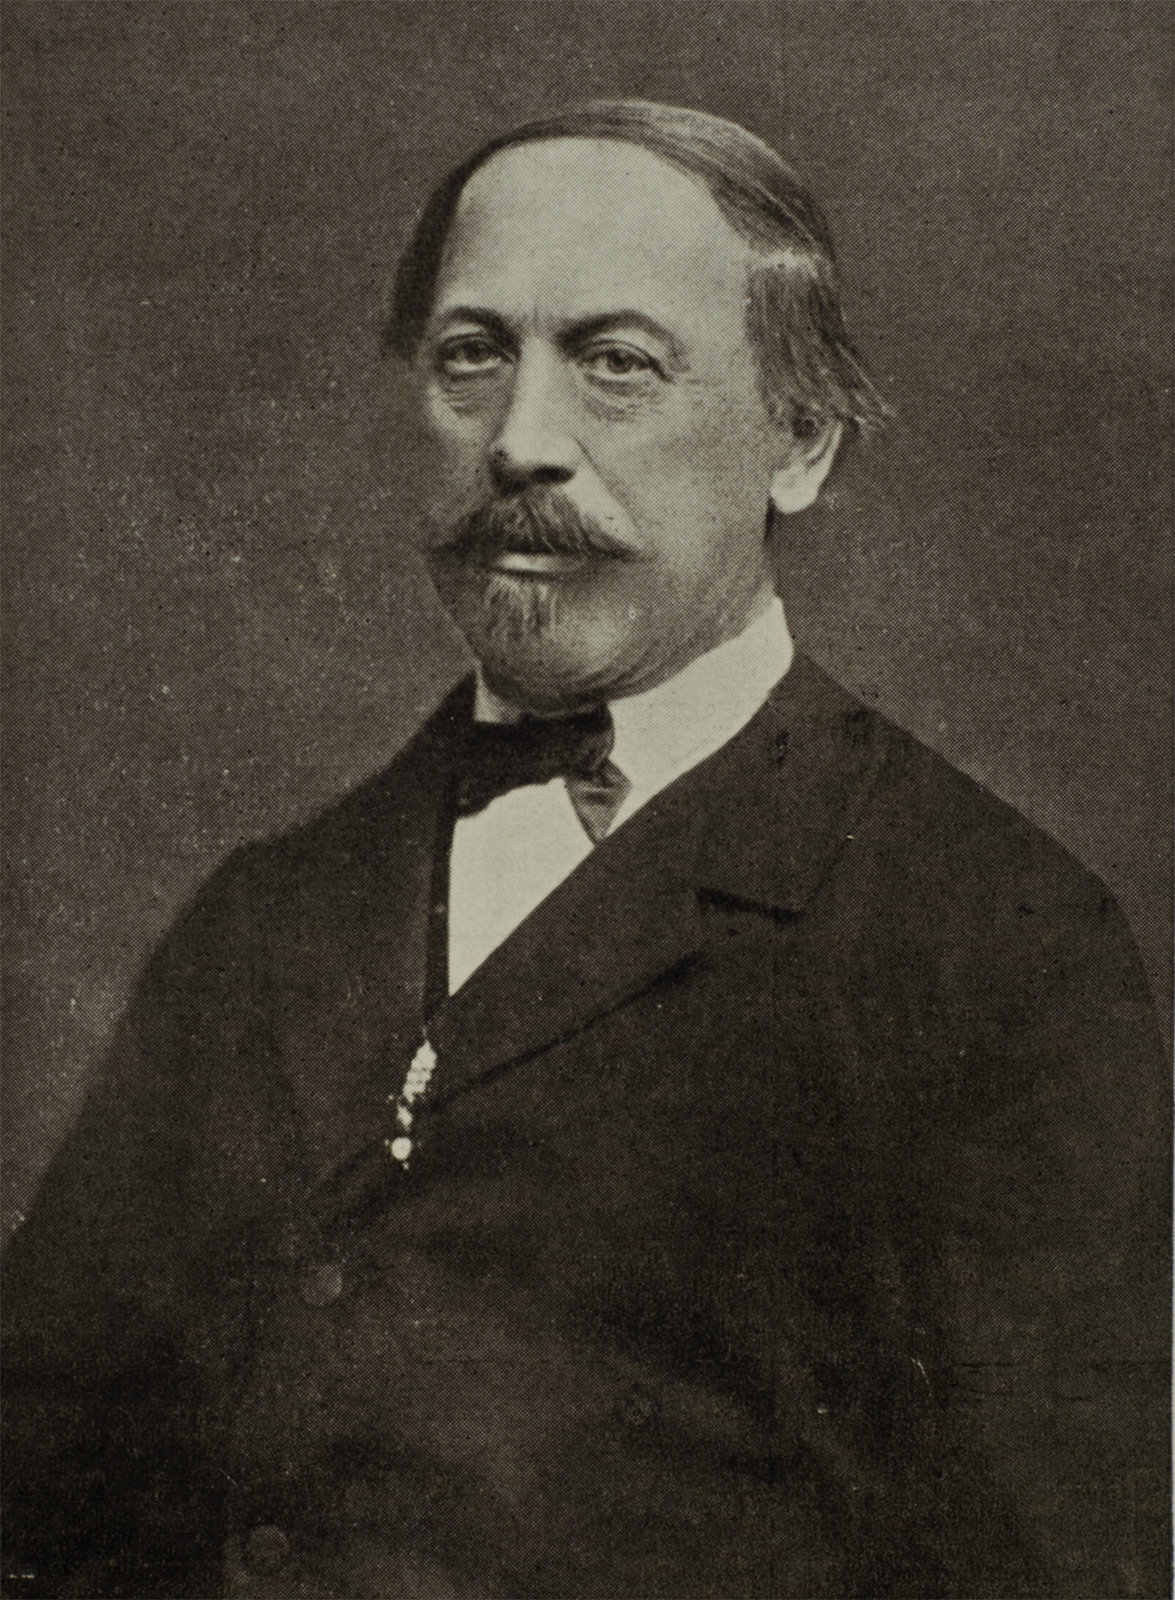 palaeontologist Heinrich Wankel